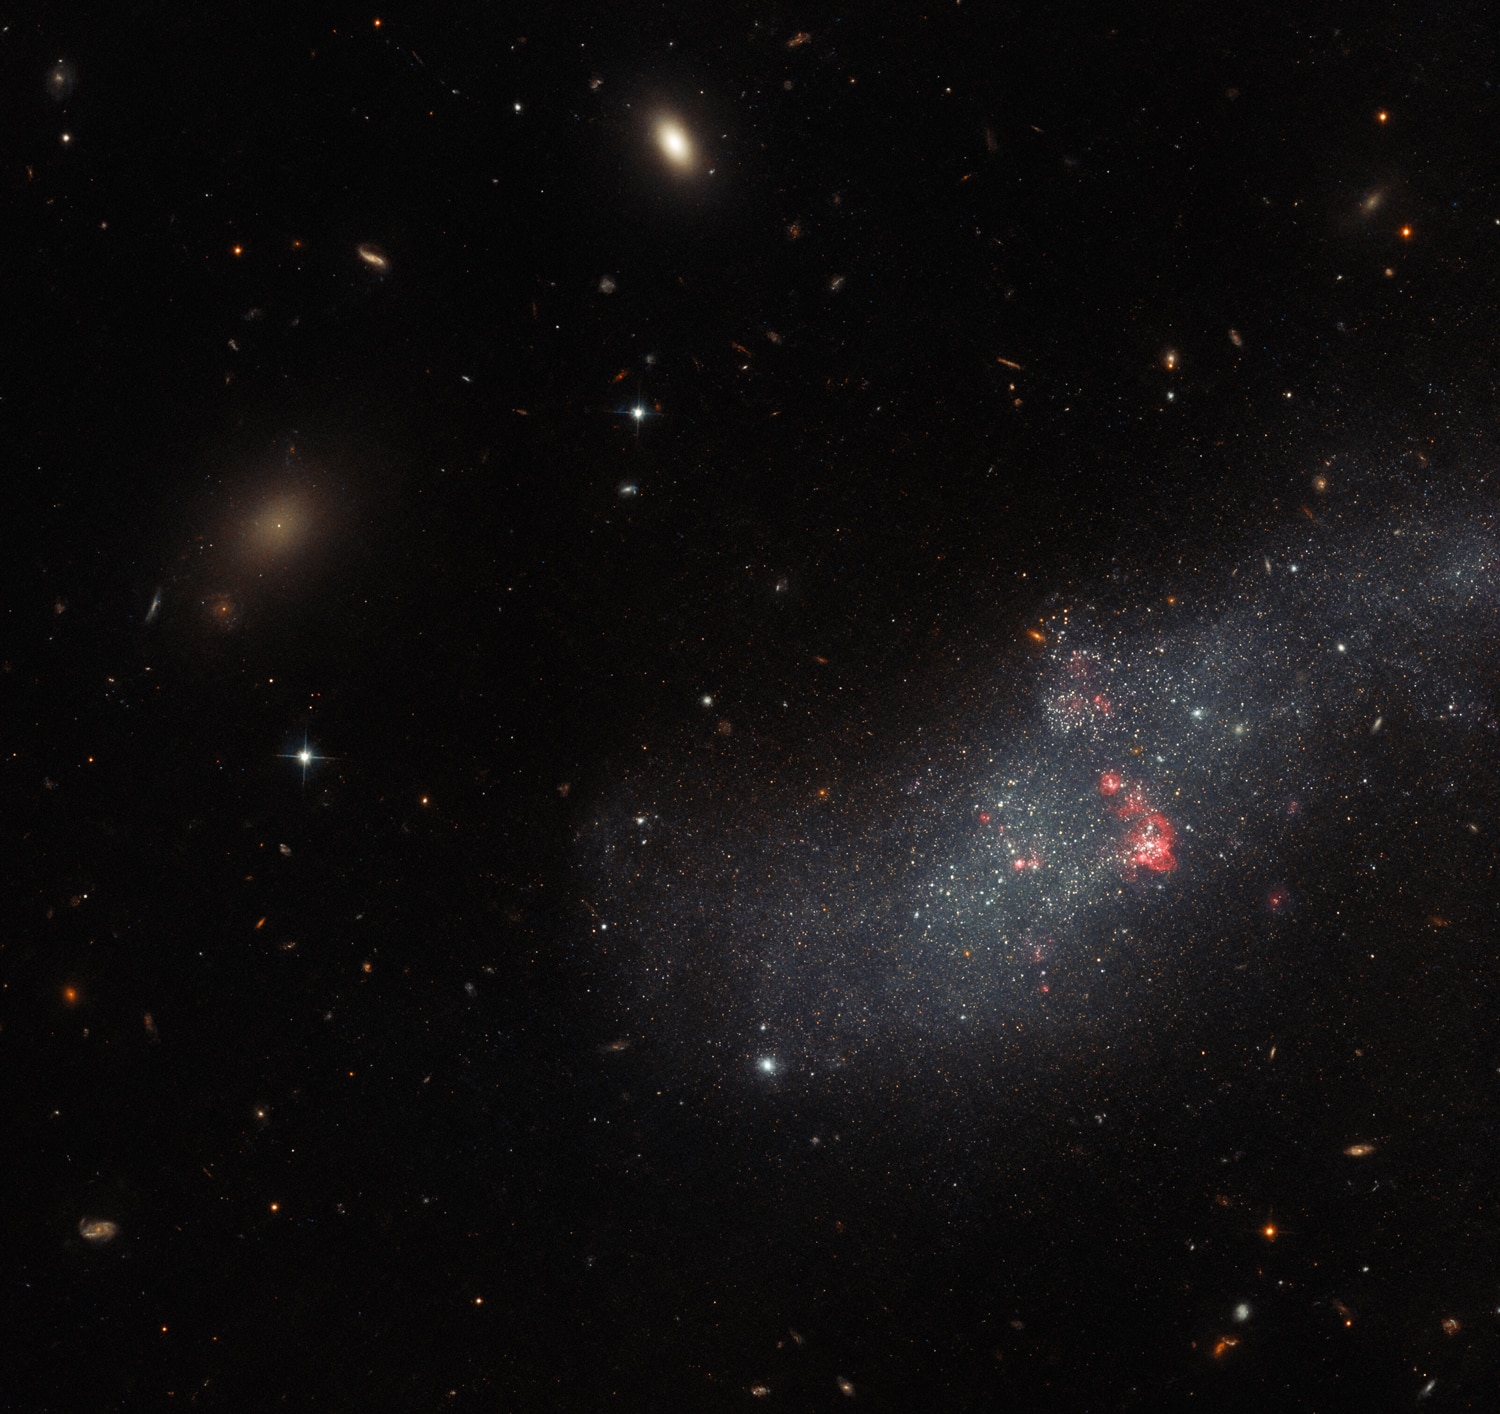 Hubble voit une petite galaxie naine sans structure définie